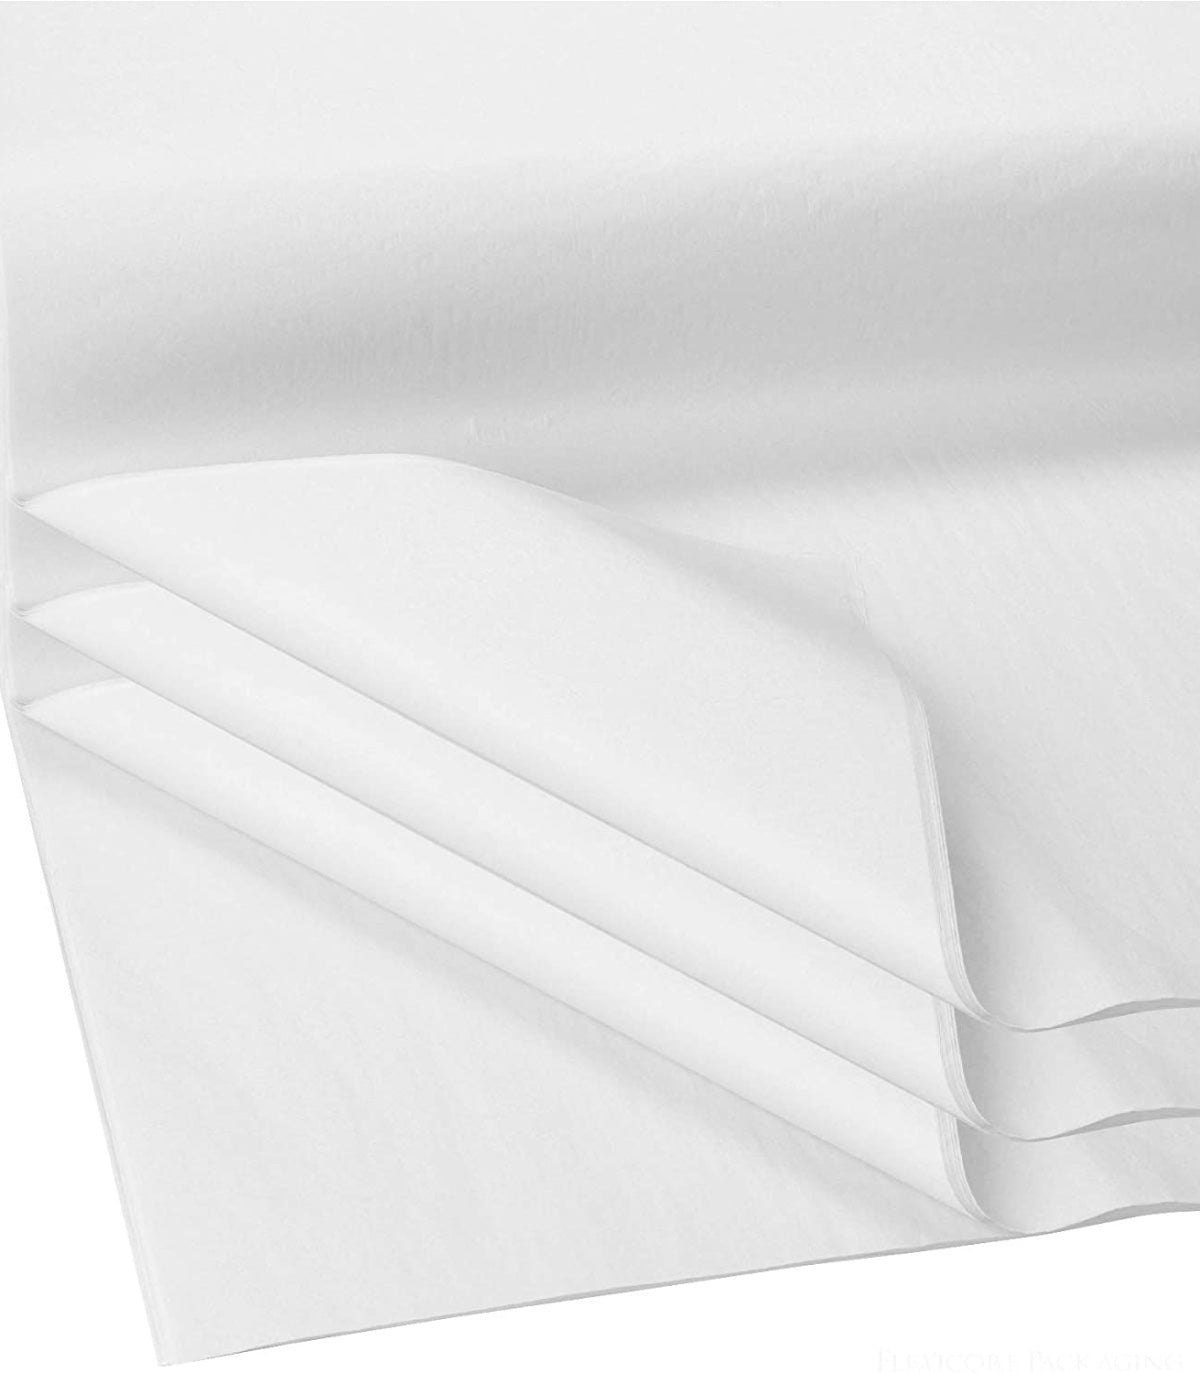 Gift Tissue Paper 20x30" - White